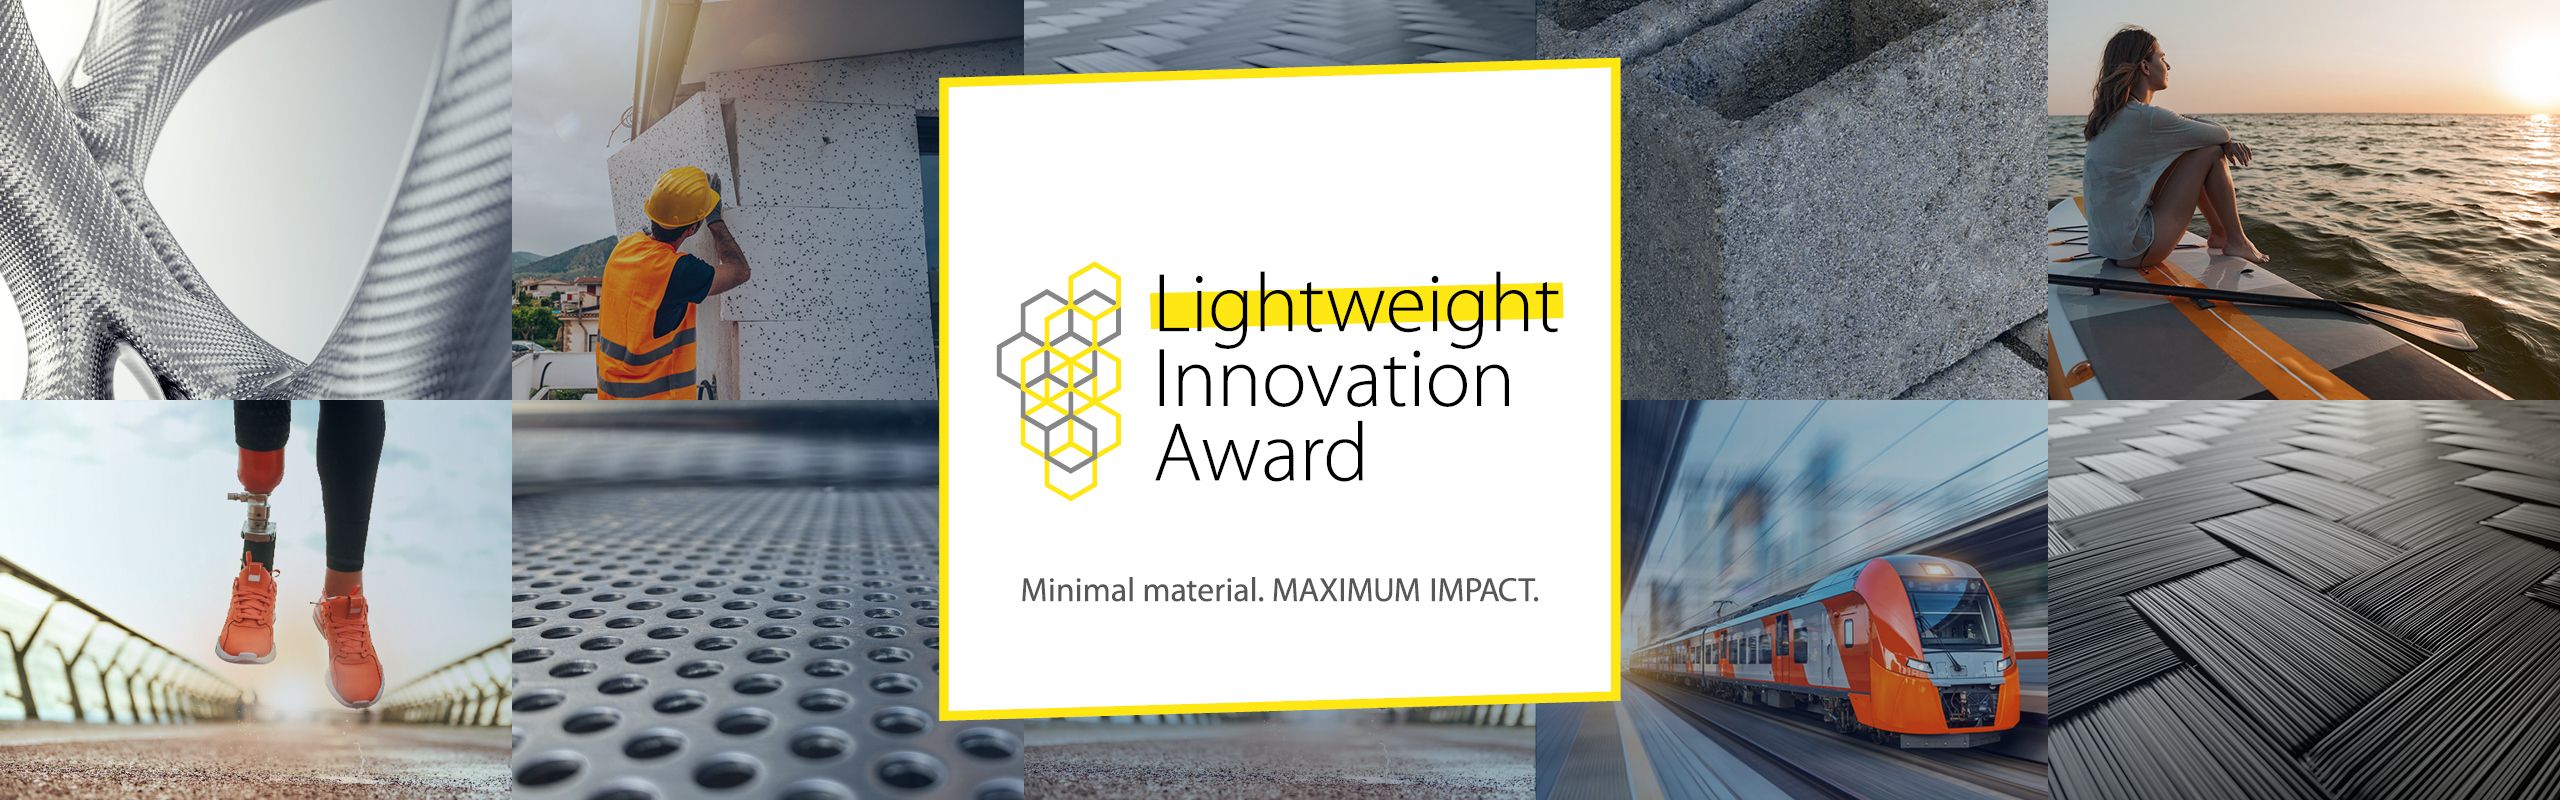 Lightweight Innovation Award Titelbild mit Logo